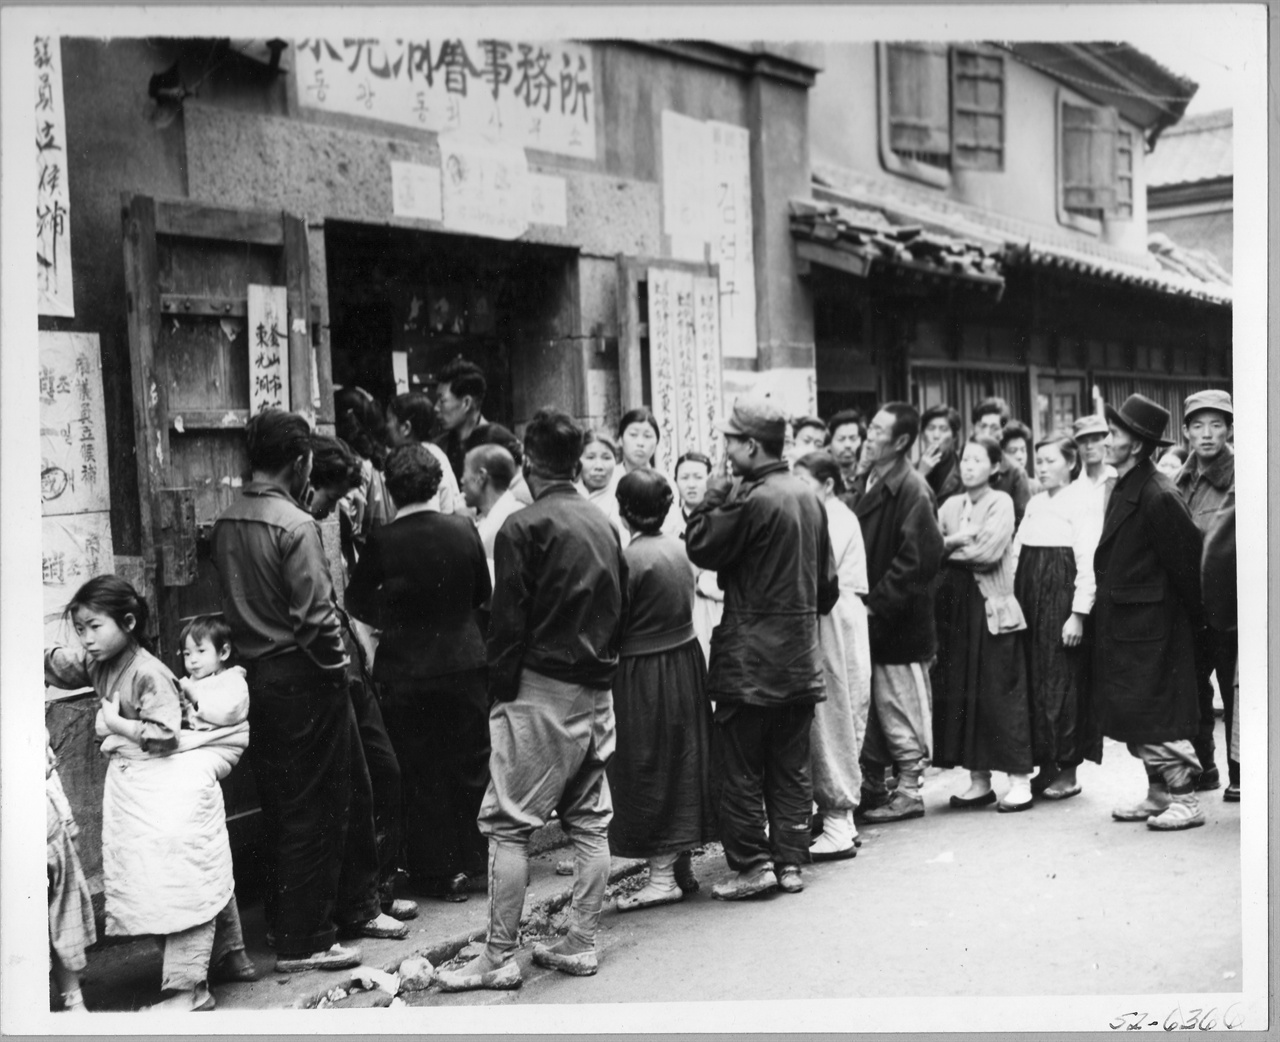  1952. 4. 25. 부산, 제2대 국회의원 선거일을 맞아 유권자들이 동광동사무소에 마련된 투표소를 찾고 있다.